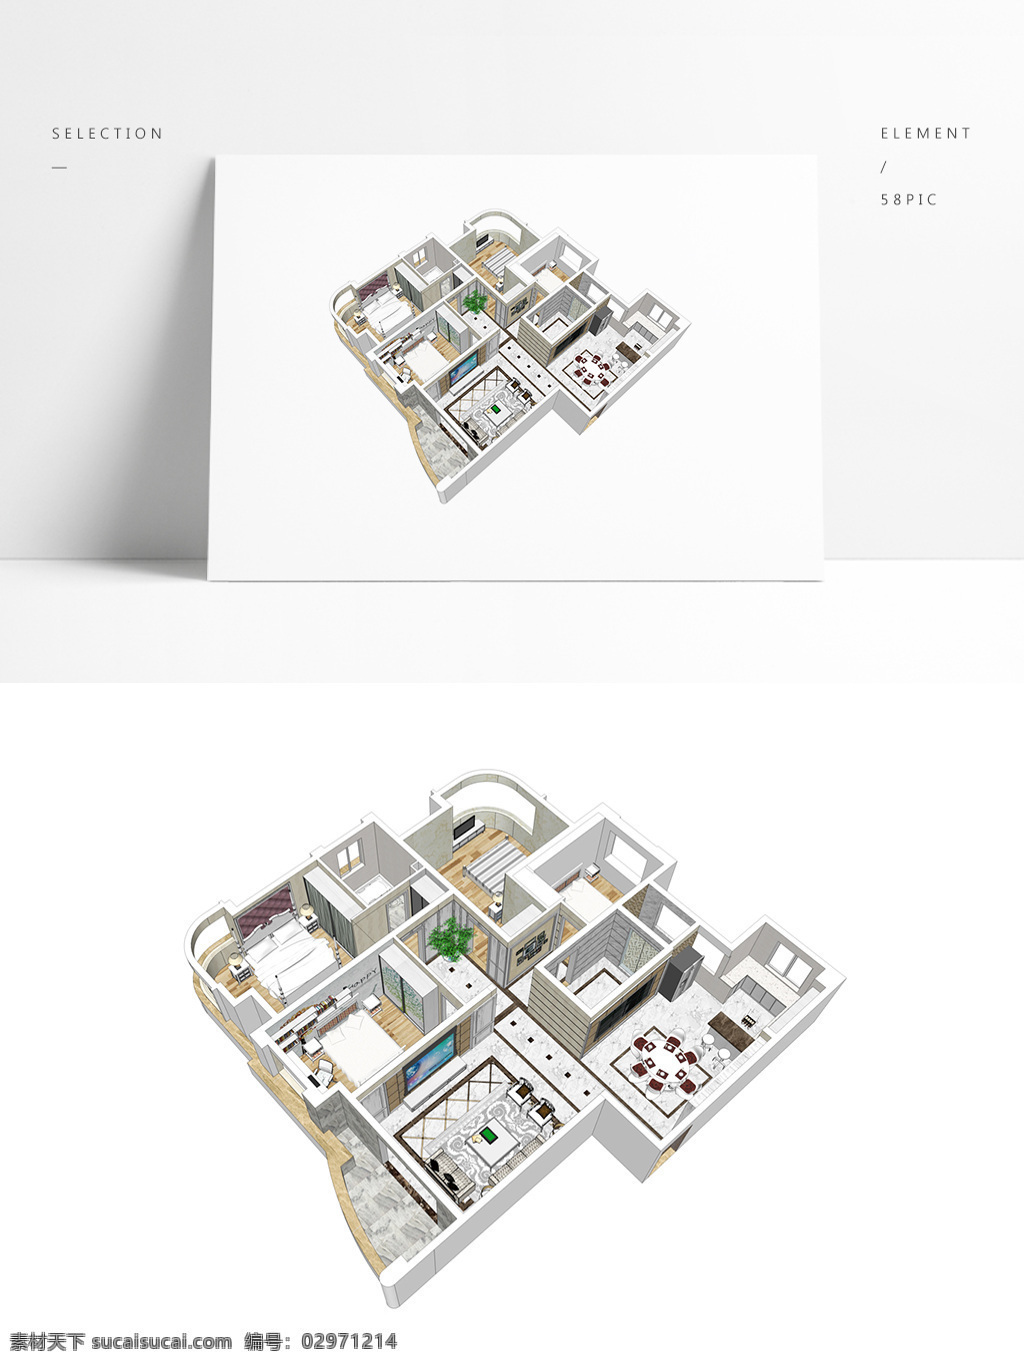 欧式 风格 住宅 su 透视 模型 室内空间设计 住宅室内设计 样板房 3d模型 su模型 草图大师模型 家具模型 欧式风格住宅